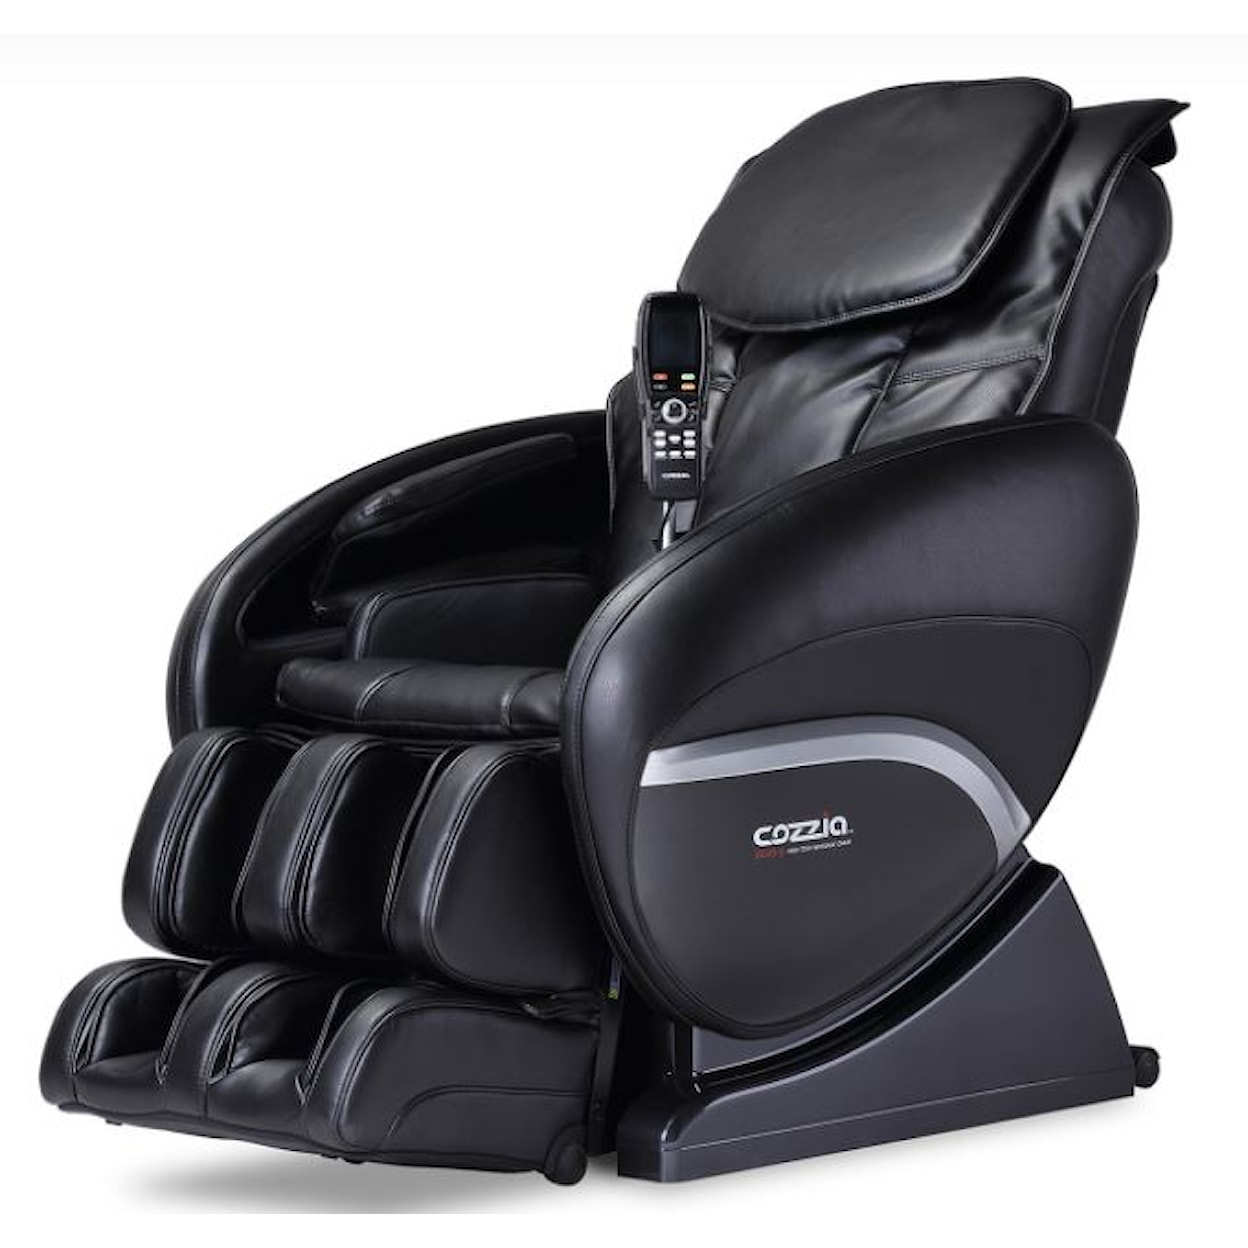 Cozzia CZ-388 Massage Chair